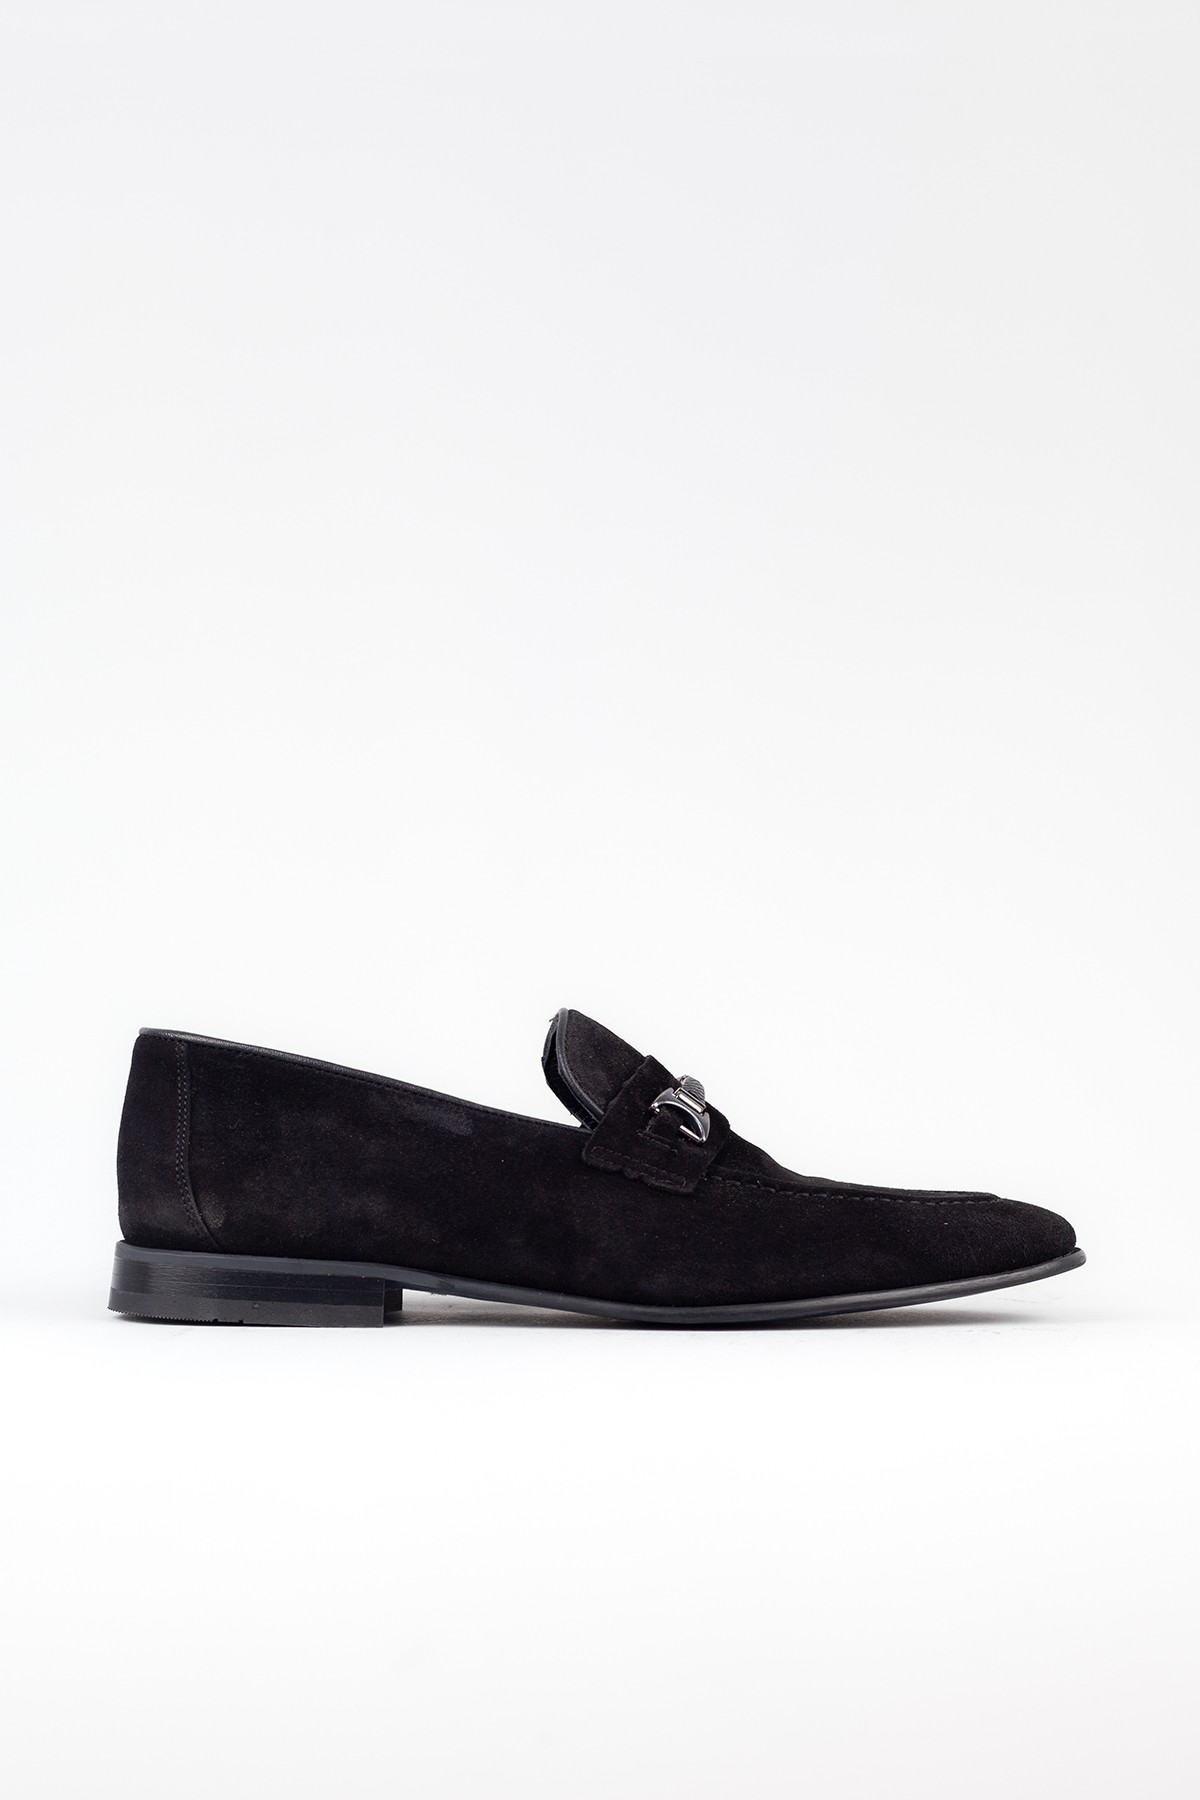 Erkek Hakiki Deri Siyah Süet Klasik Ayakkabı